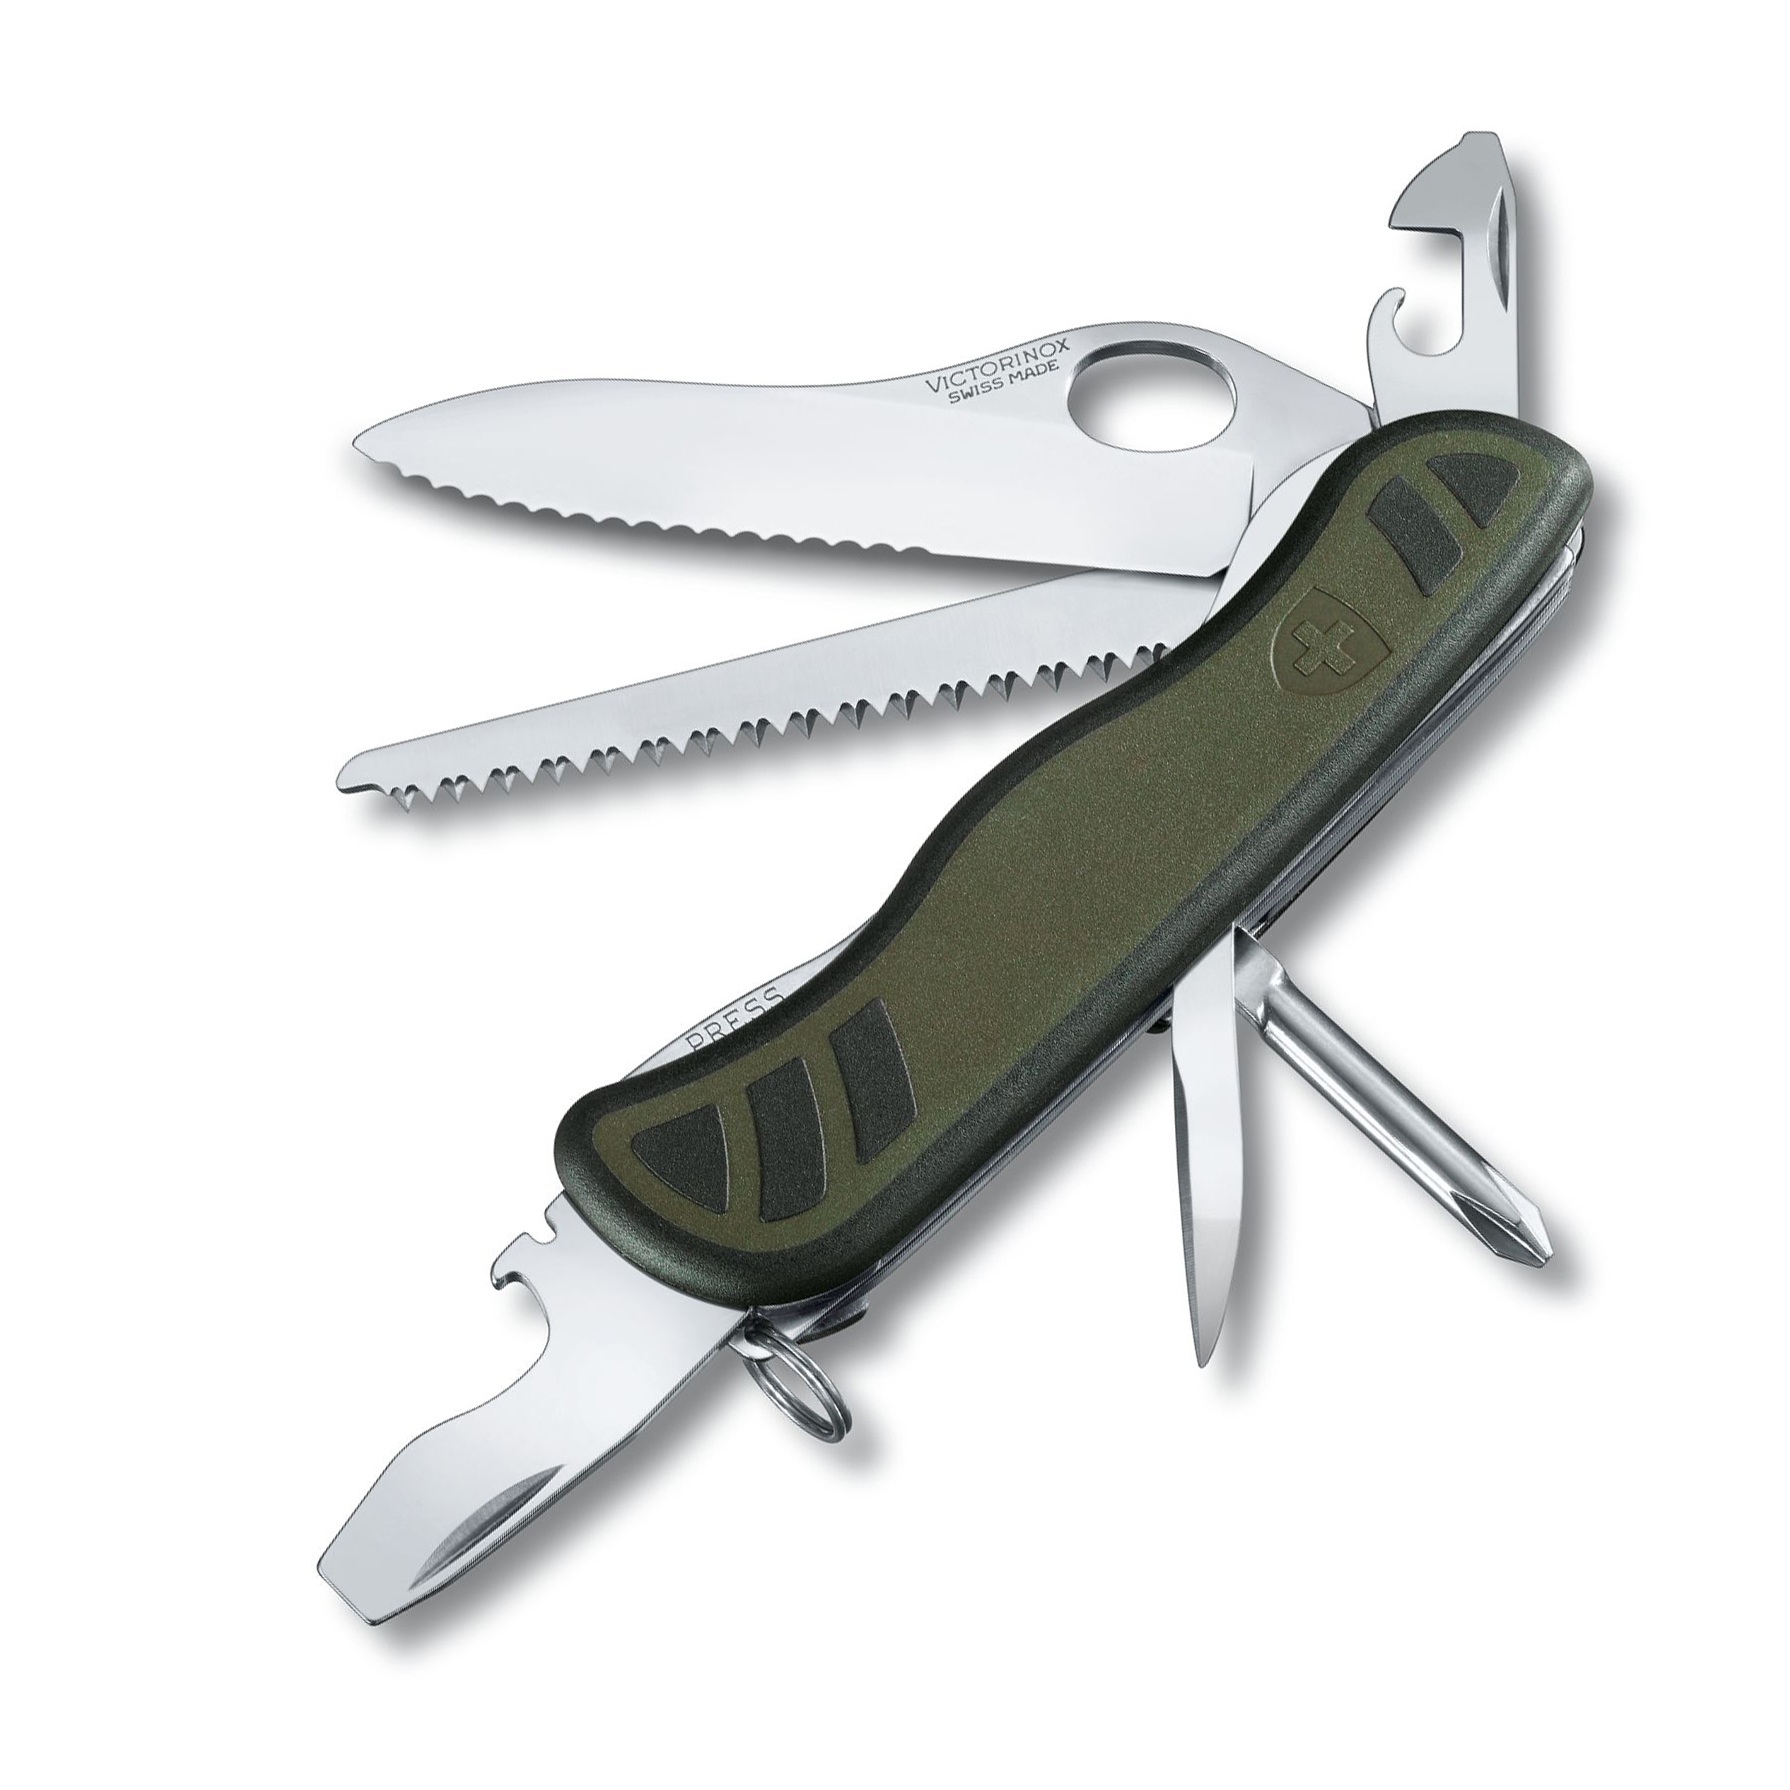 Нож перочинный Victorinox Military, сталь X50CrMoV15, рукоять нейлон, зеленый многофункциональный инструмент favourite obs 21 mf зеленый